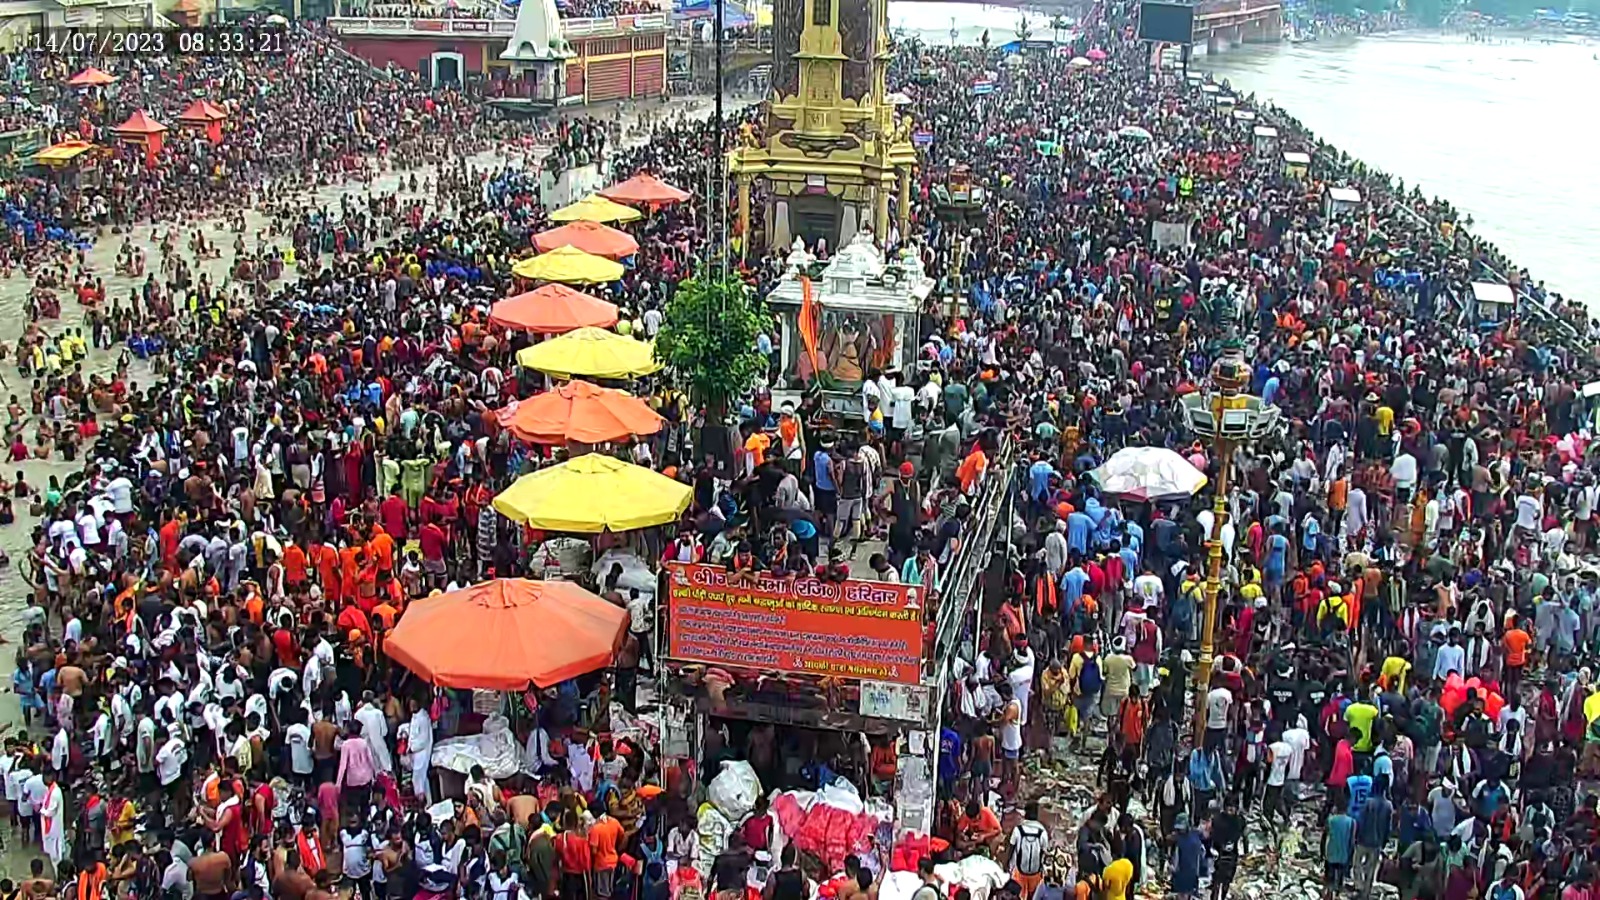 Kanwad mela sampann,12दिन बाद,भगवान शिव के जलाभिषेक के साथ कांवड मेला सम्पन्न।